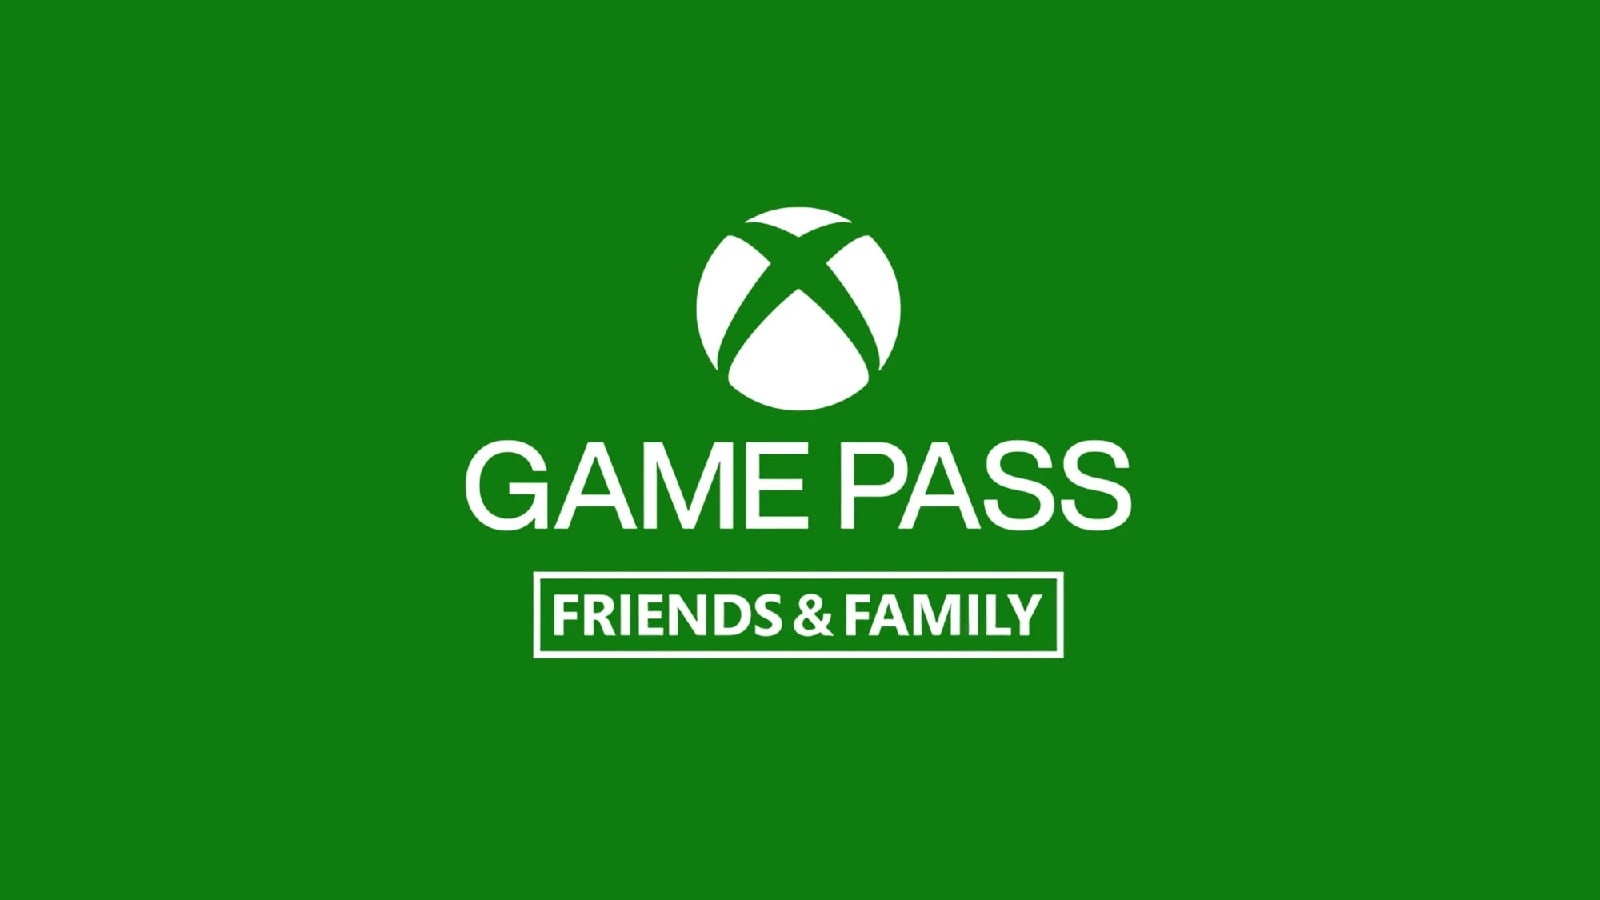 В Xbox Game Pass появится новая семейная подписка Friends & Family.